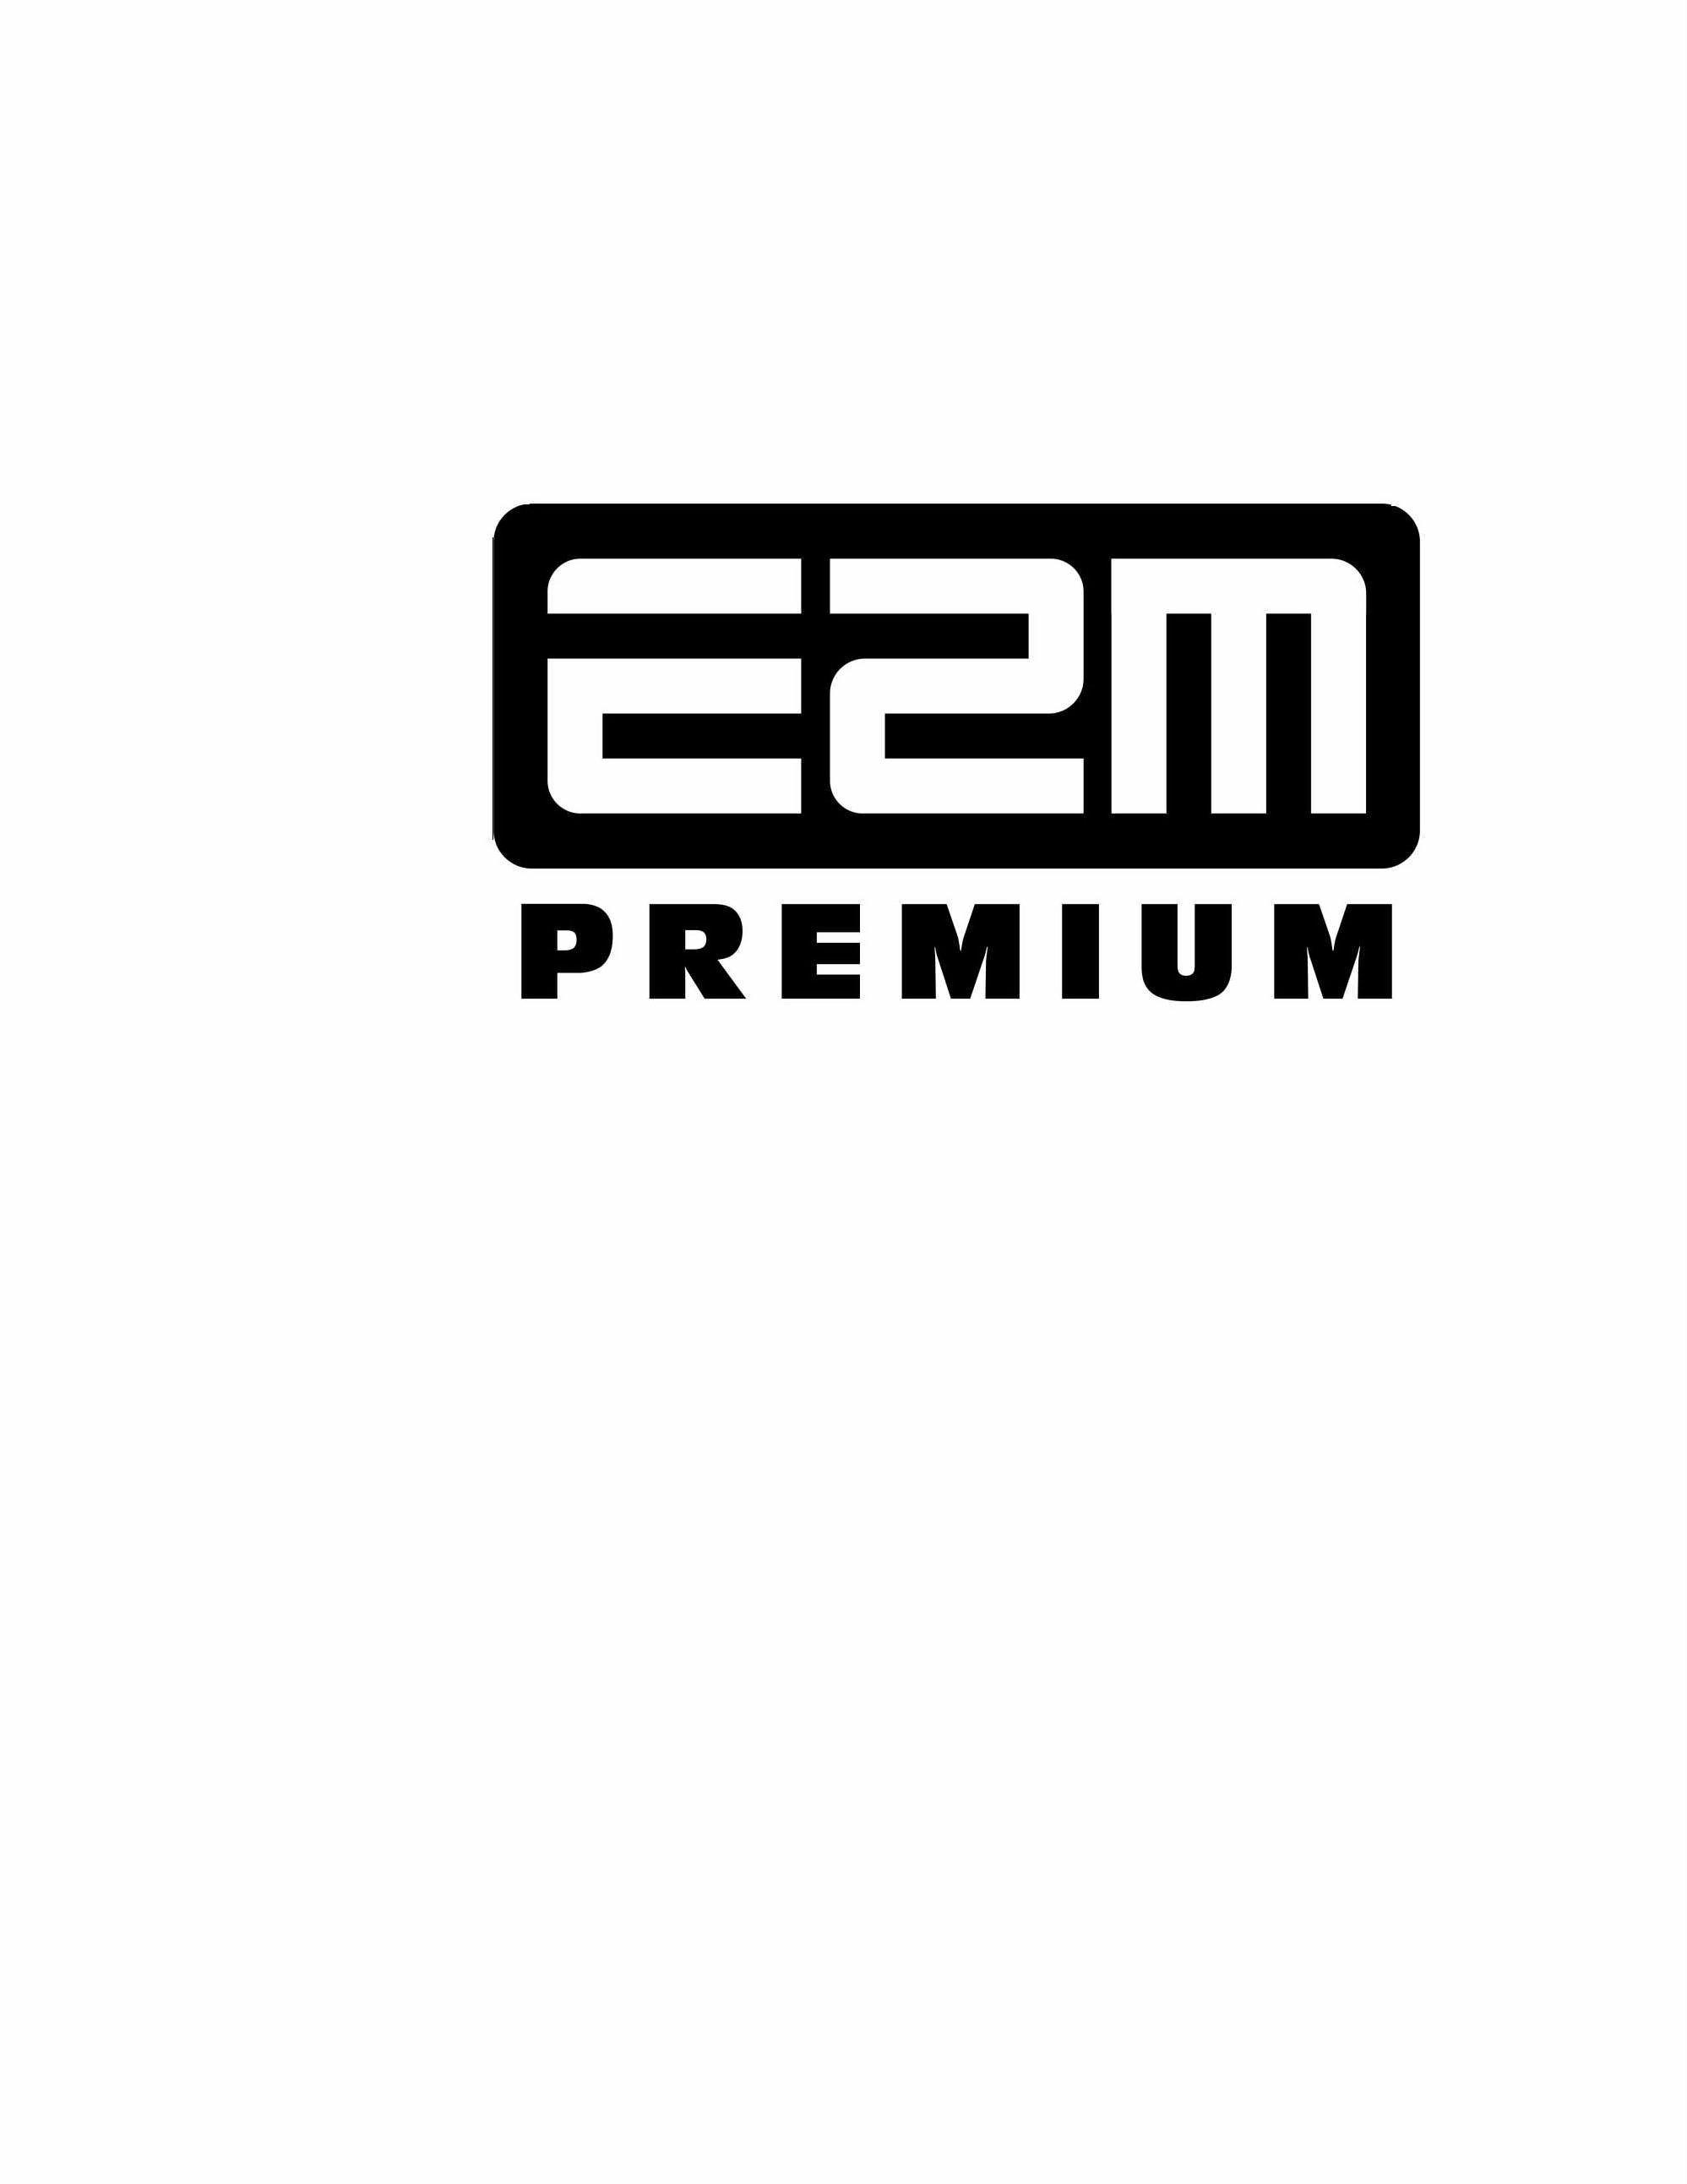 E2M PREMIUM - Golden Spoon Holdings LLC Trademark Registration